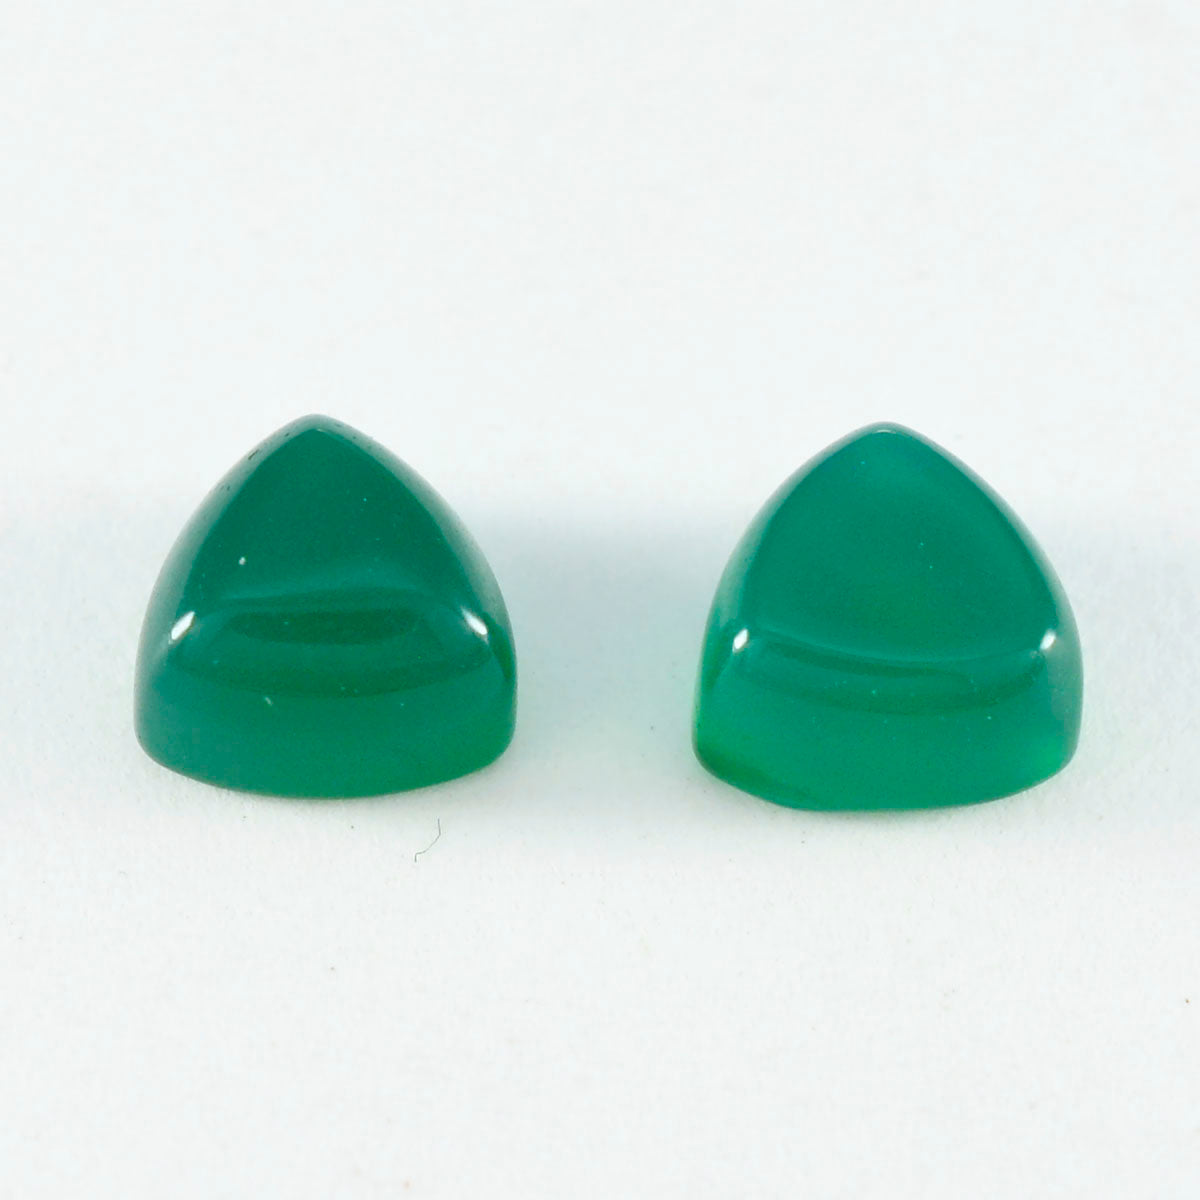 Riyogems 1 Stück grüner Onyx-Cabochon, 14 x 14 mm, Trillionenform, Edelsteine von Schönheitsqualität